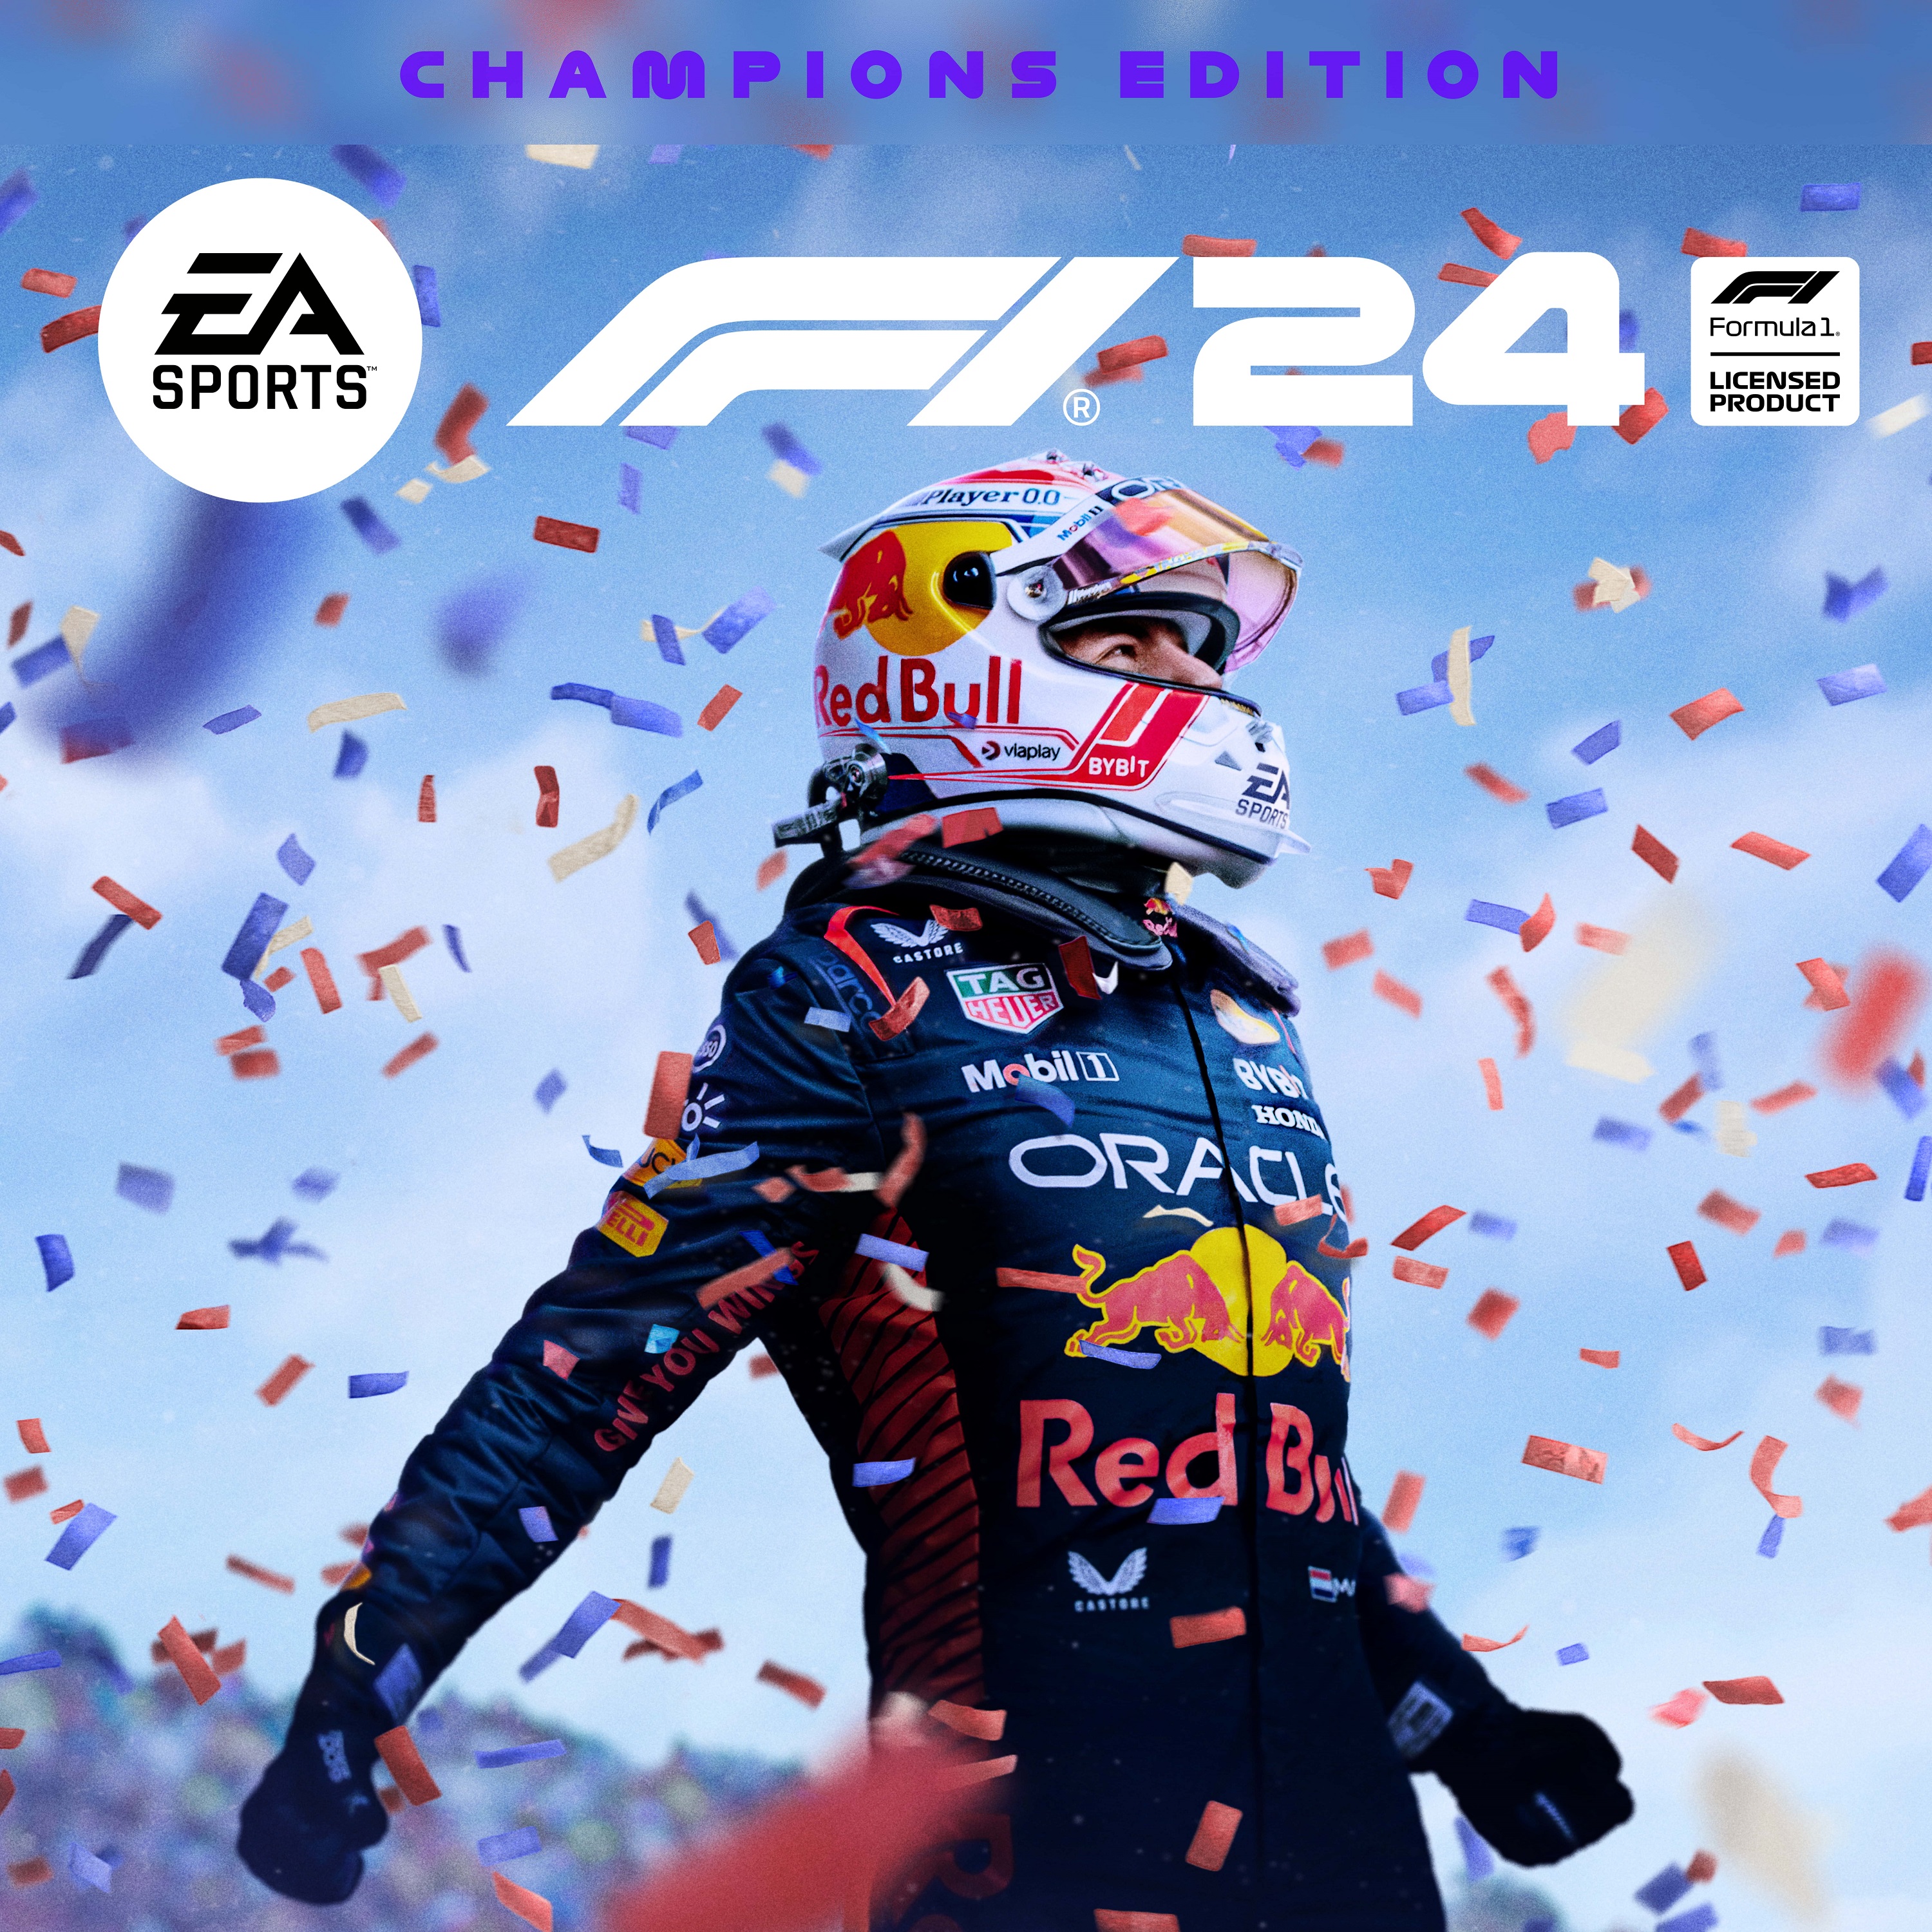 F1 24 champion edition 2